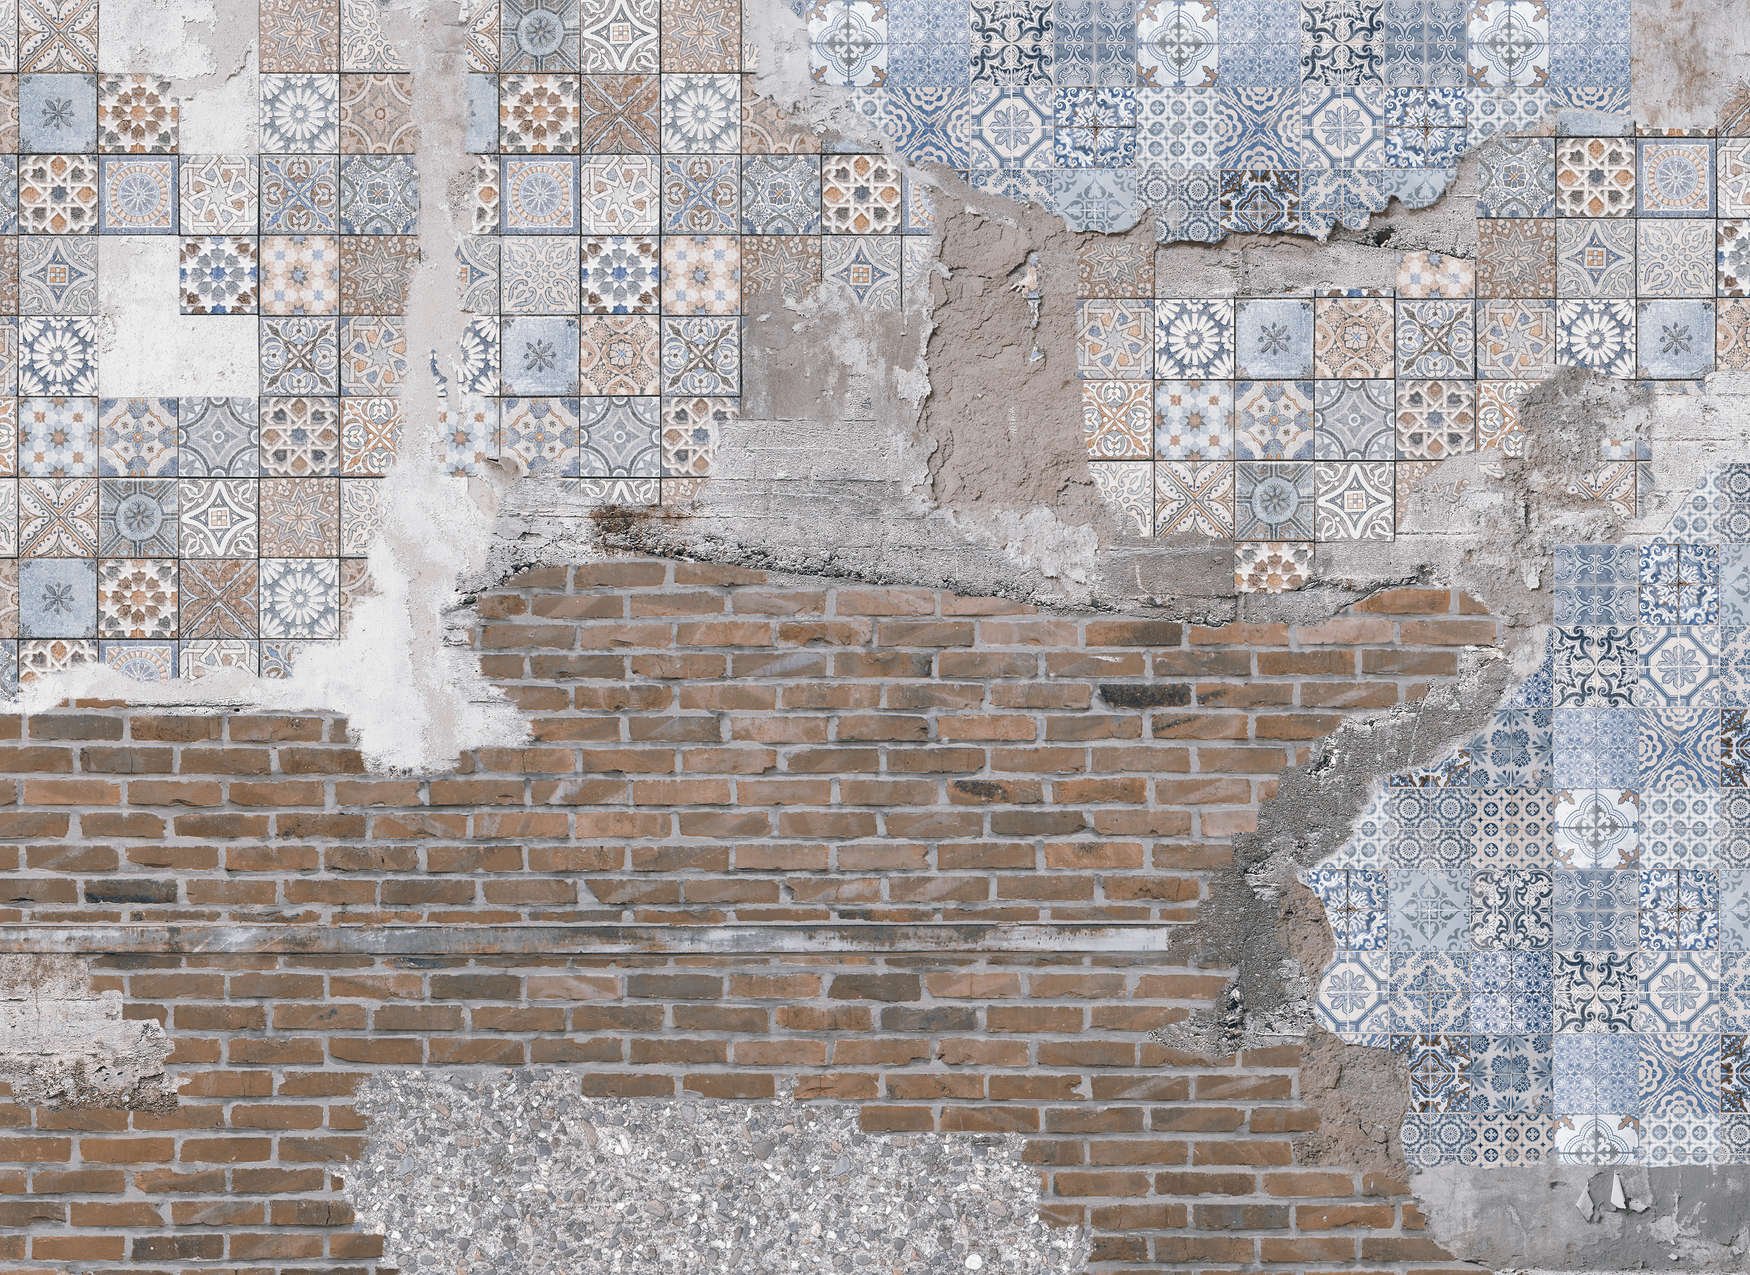             Fotomurali Muro di mattoni con pietre di mosaico intonacate - Marrone, blu, grigio
        